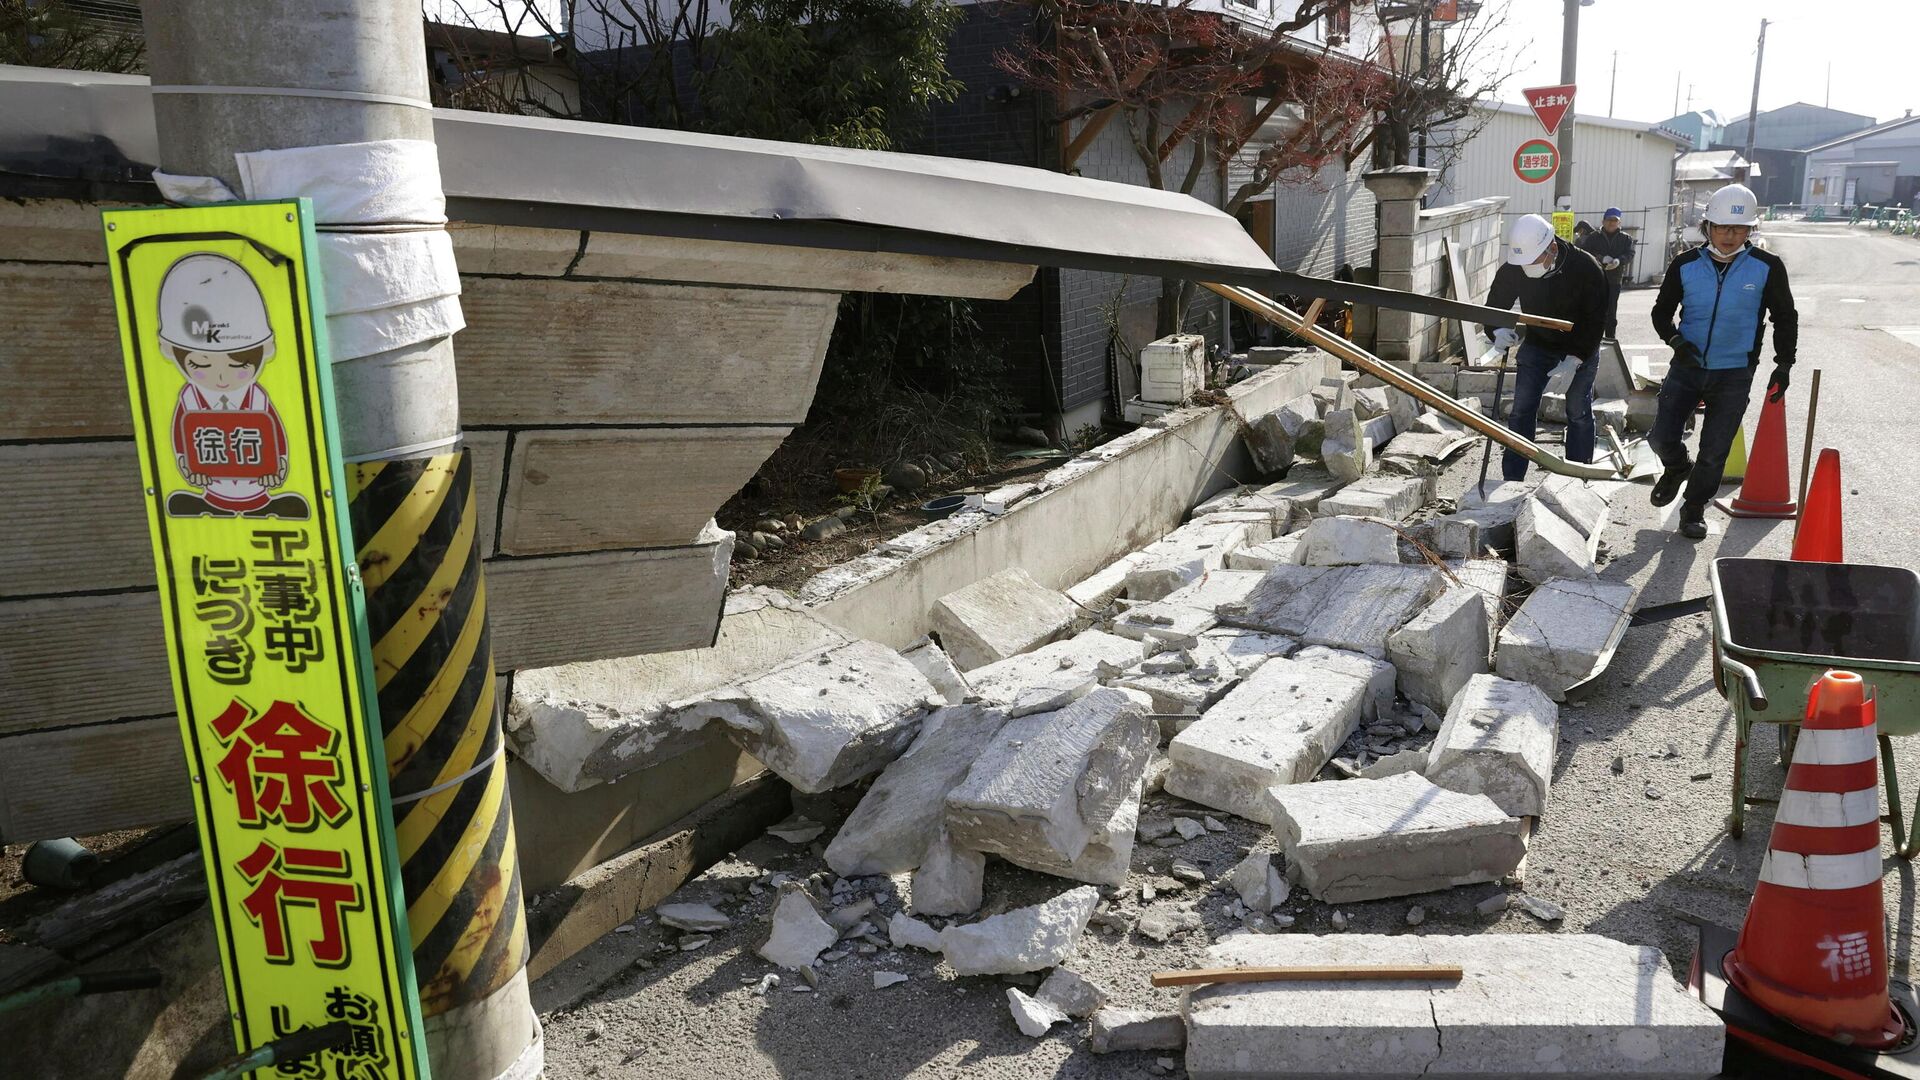 Обрушенная стена в результате сильного землетрясения в префектуре Фукусима, Япония. 14 февраля 2021 - РИА Новости, 1920, 14.02.2021